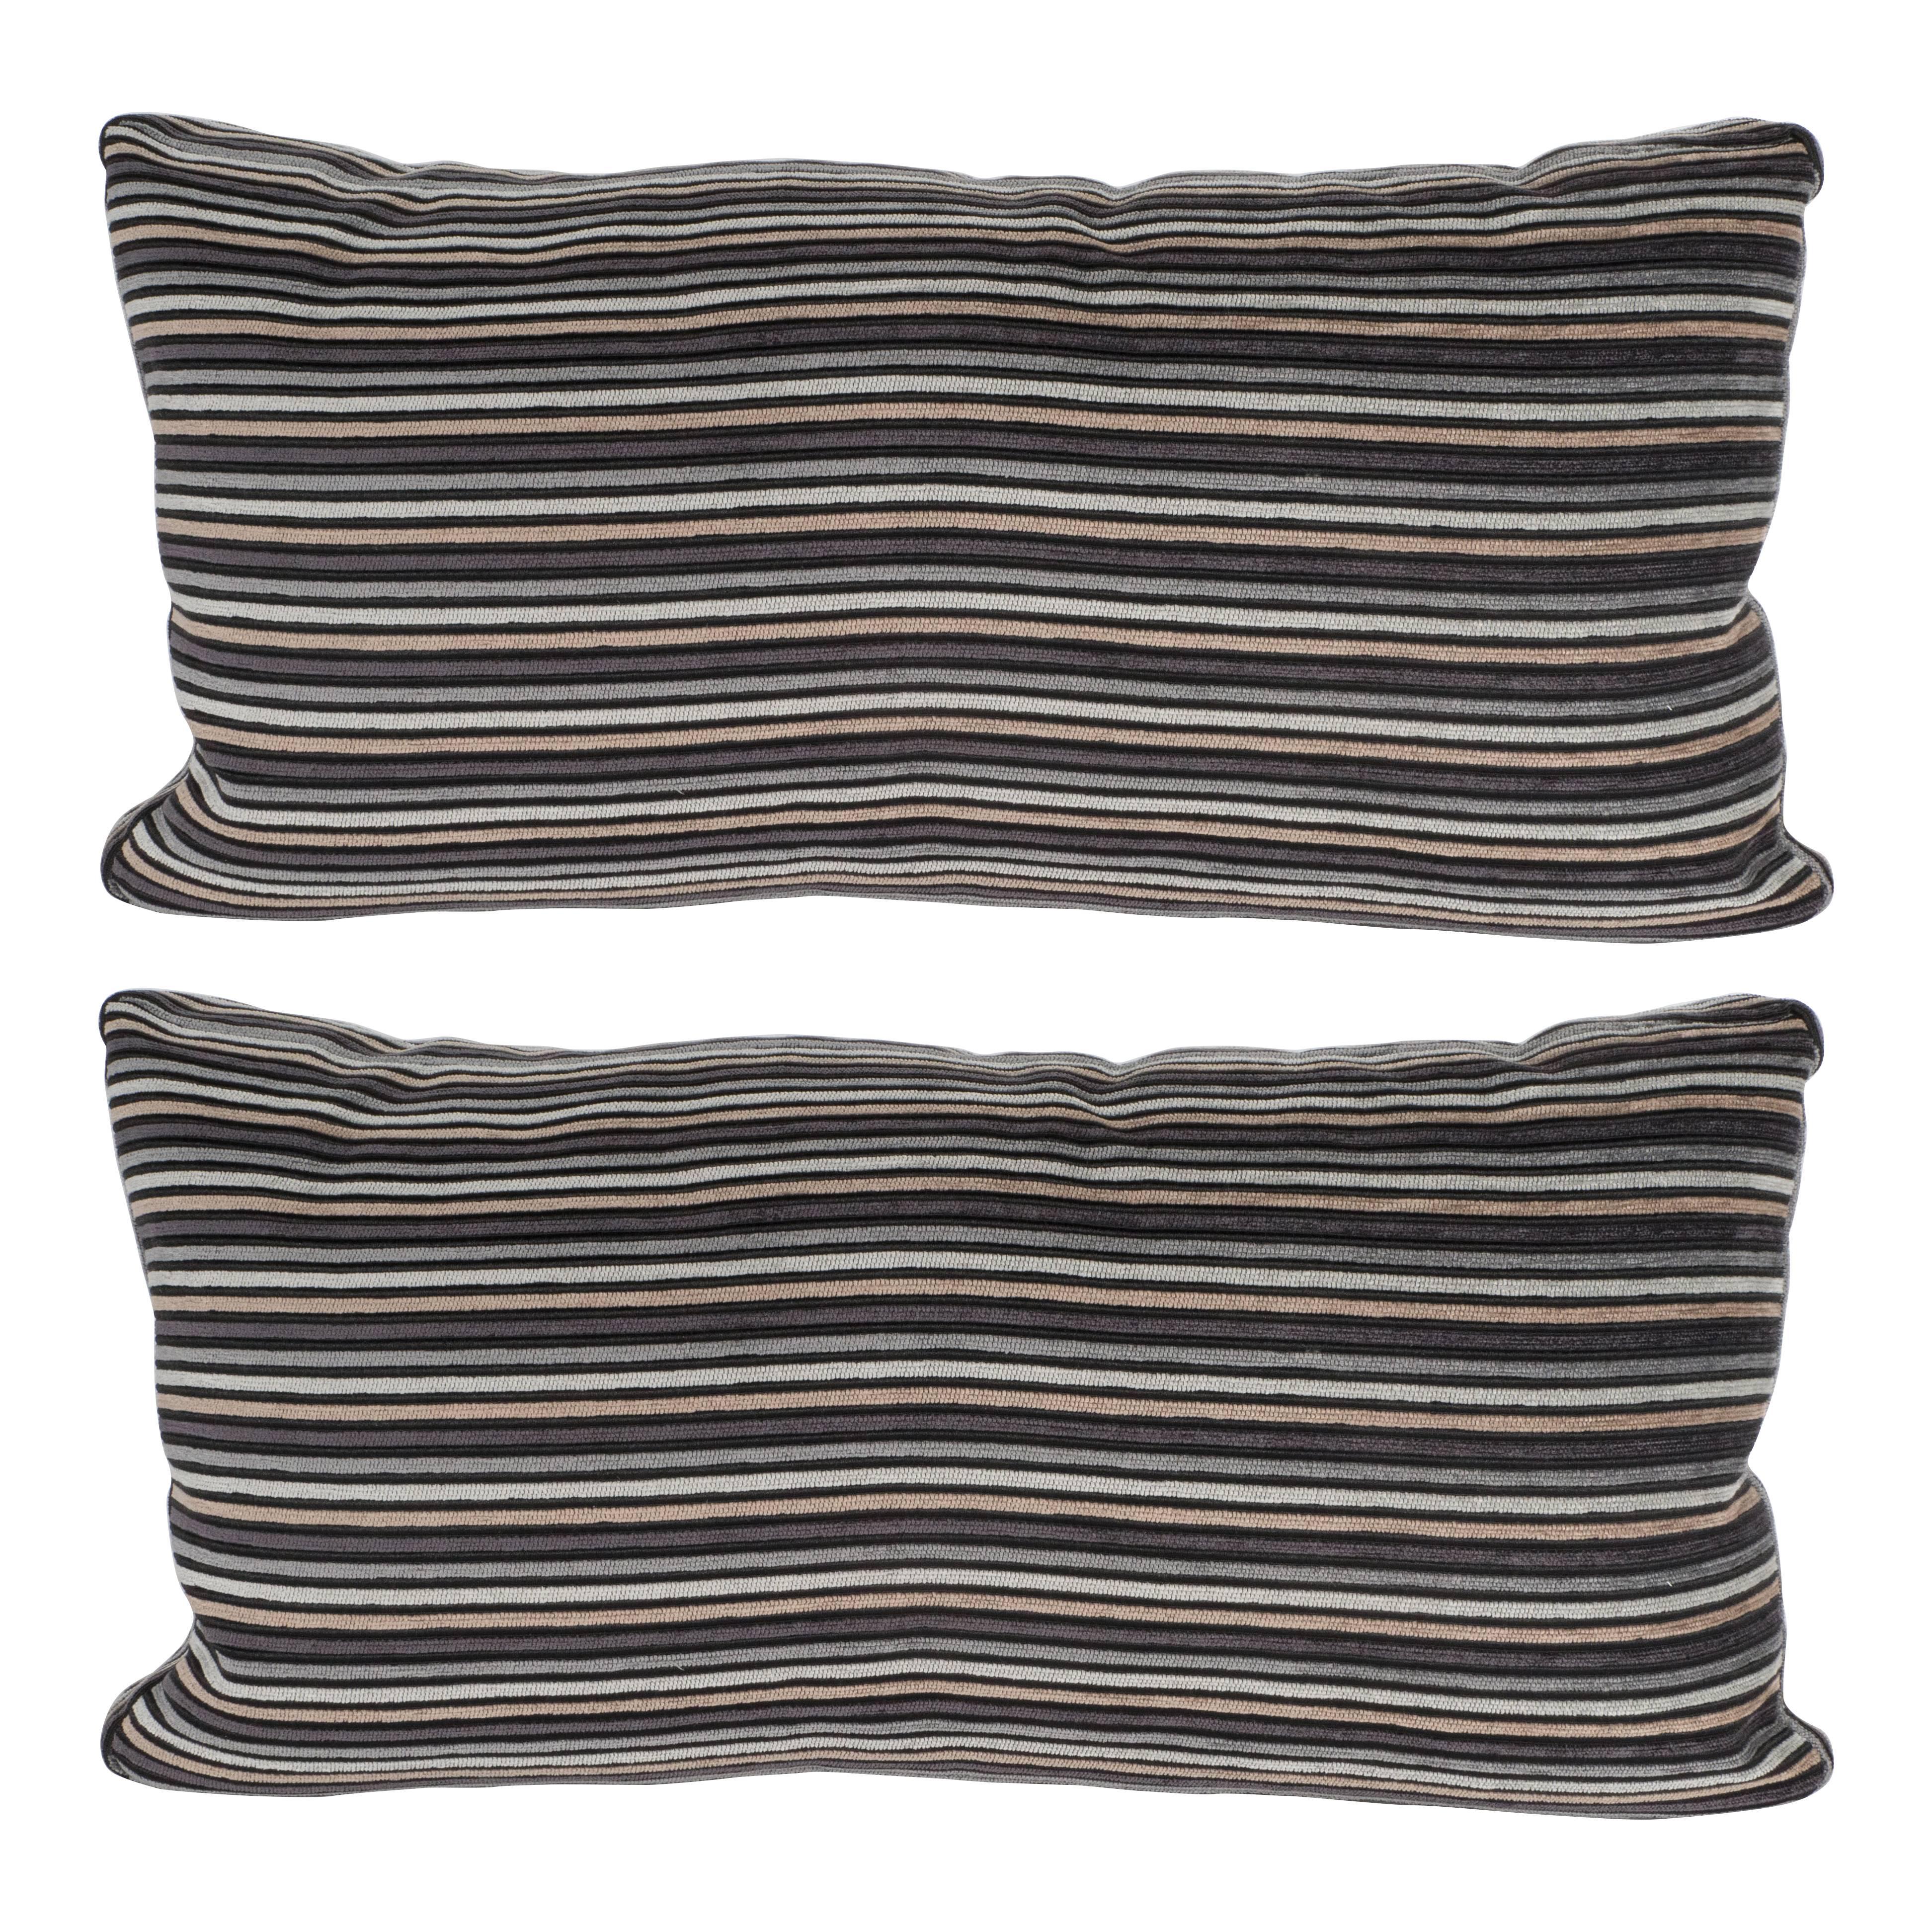 Pair of Modern Rectangular Striped Velvet Pillows in Neutral Silver & Gold Tones For Sale